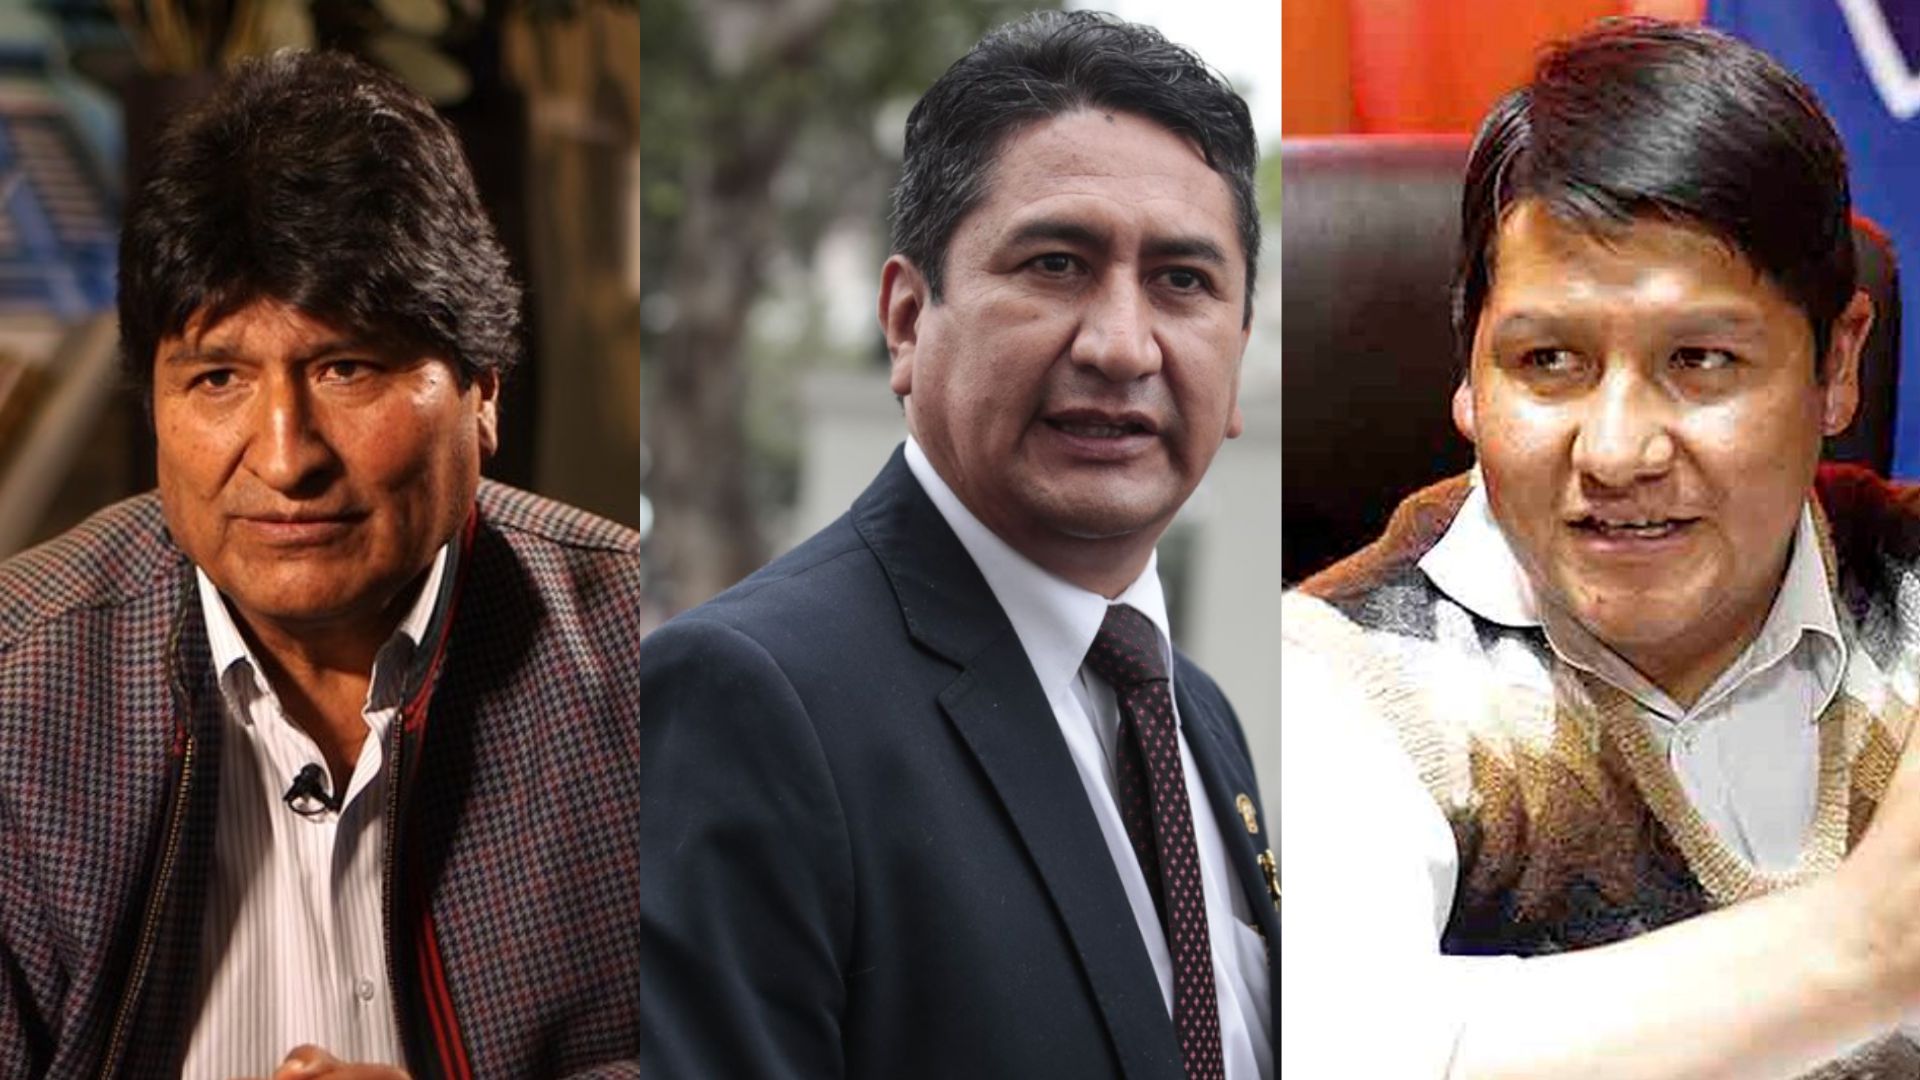 Fiscalía de Puno abre investigación contra Evo Morales y Vladimir Cerrón por traición a la patria